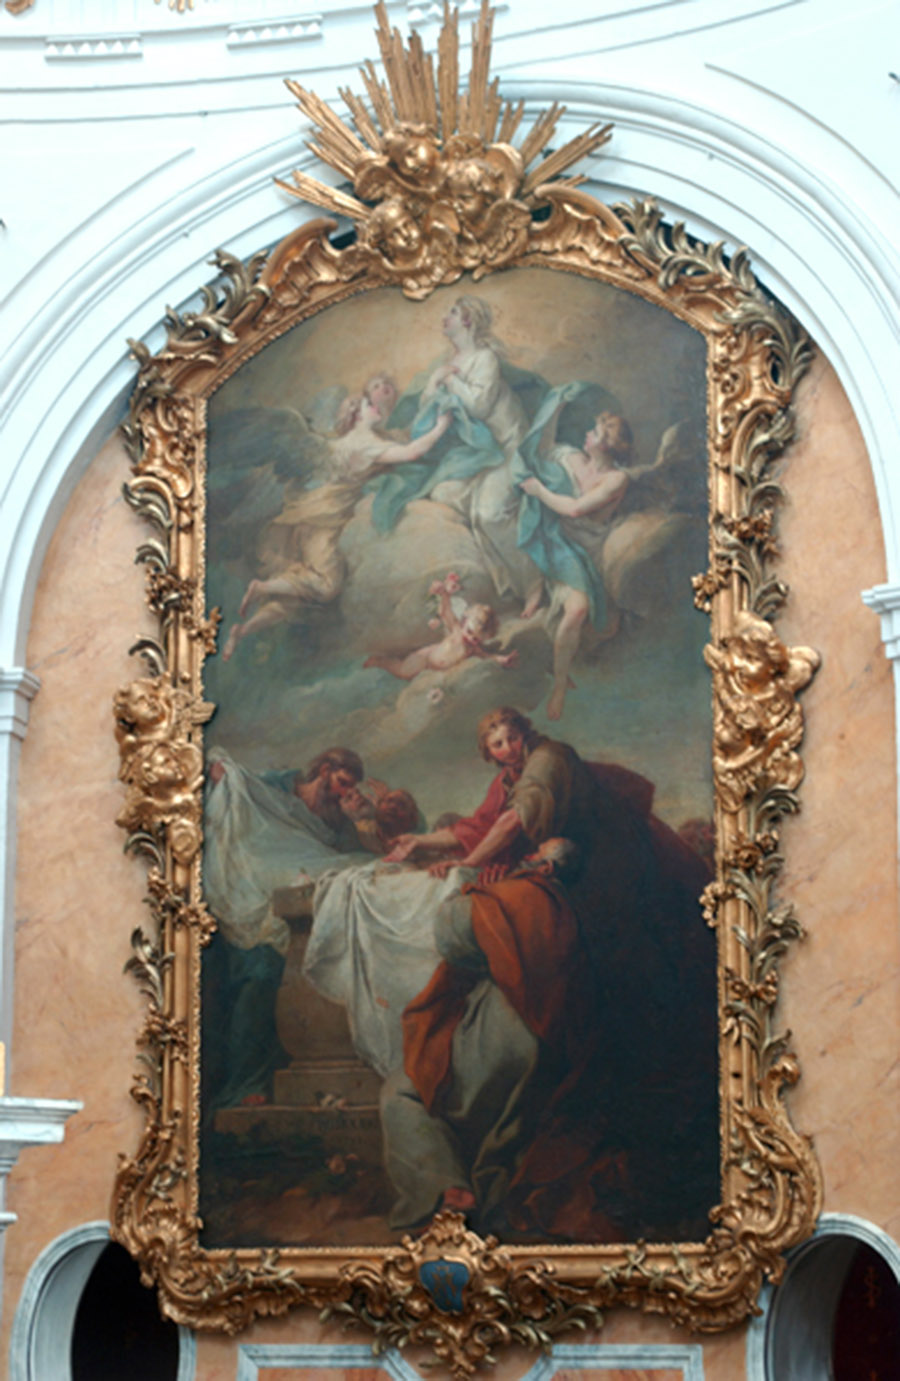 Assumption of the Virgin